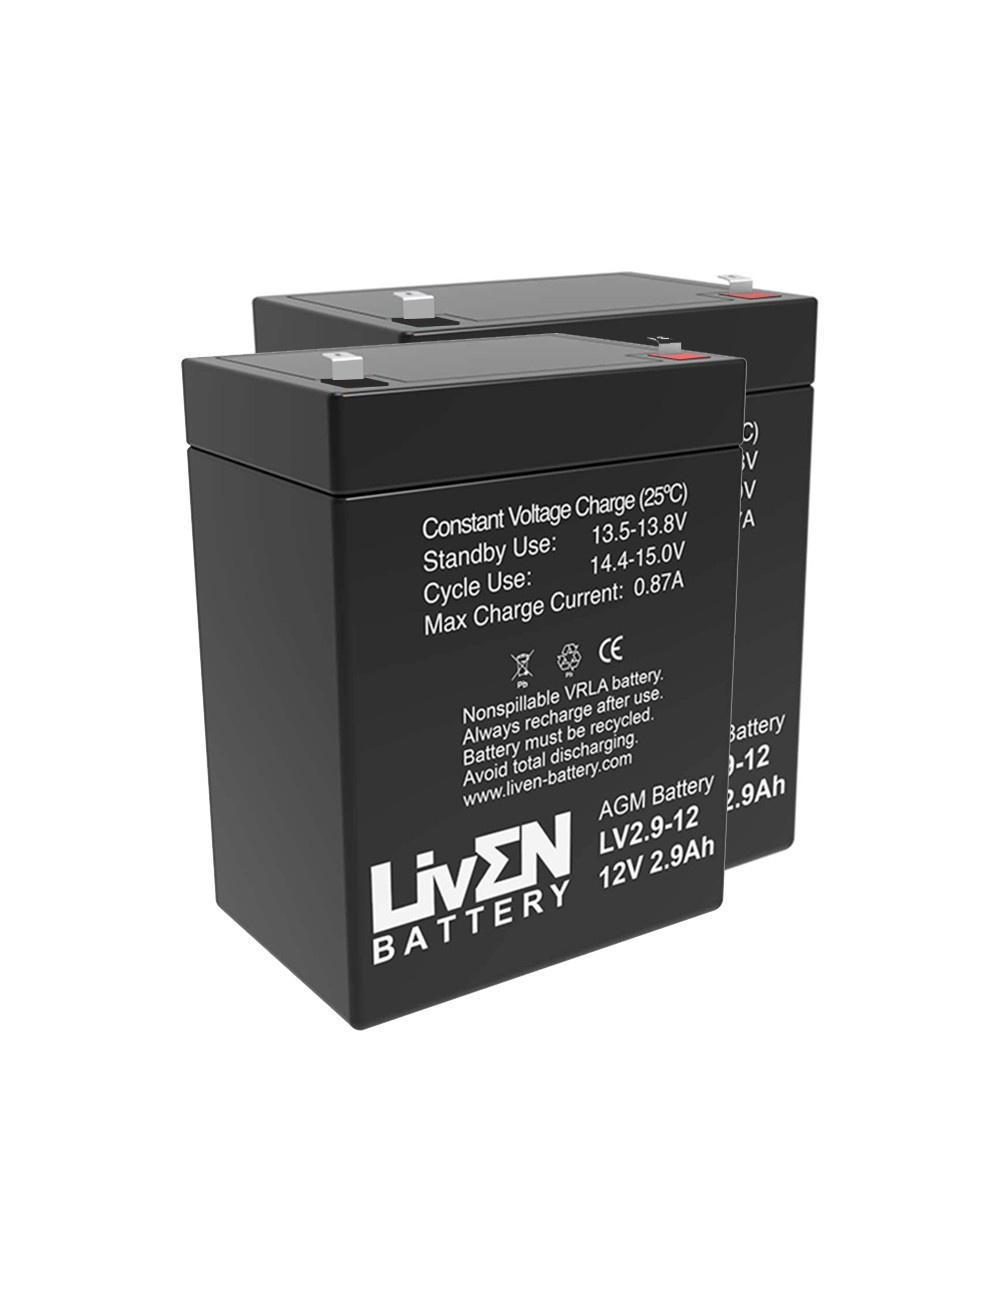 Pacote de 2 baterias (24V) para elevadores de transferência e cestas Linak Jumbo 12V 2,9Ah Liven LV2.9-12 - 1